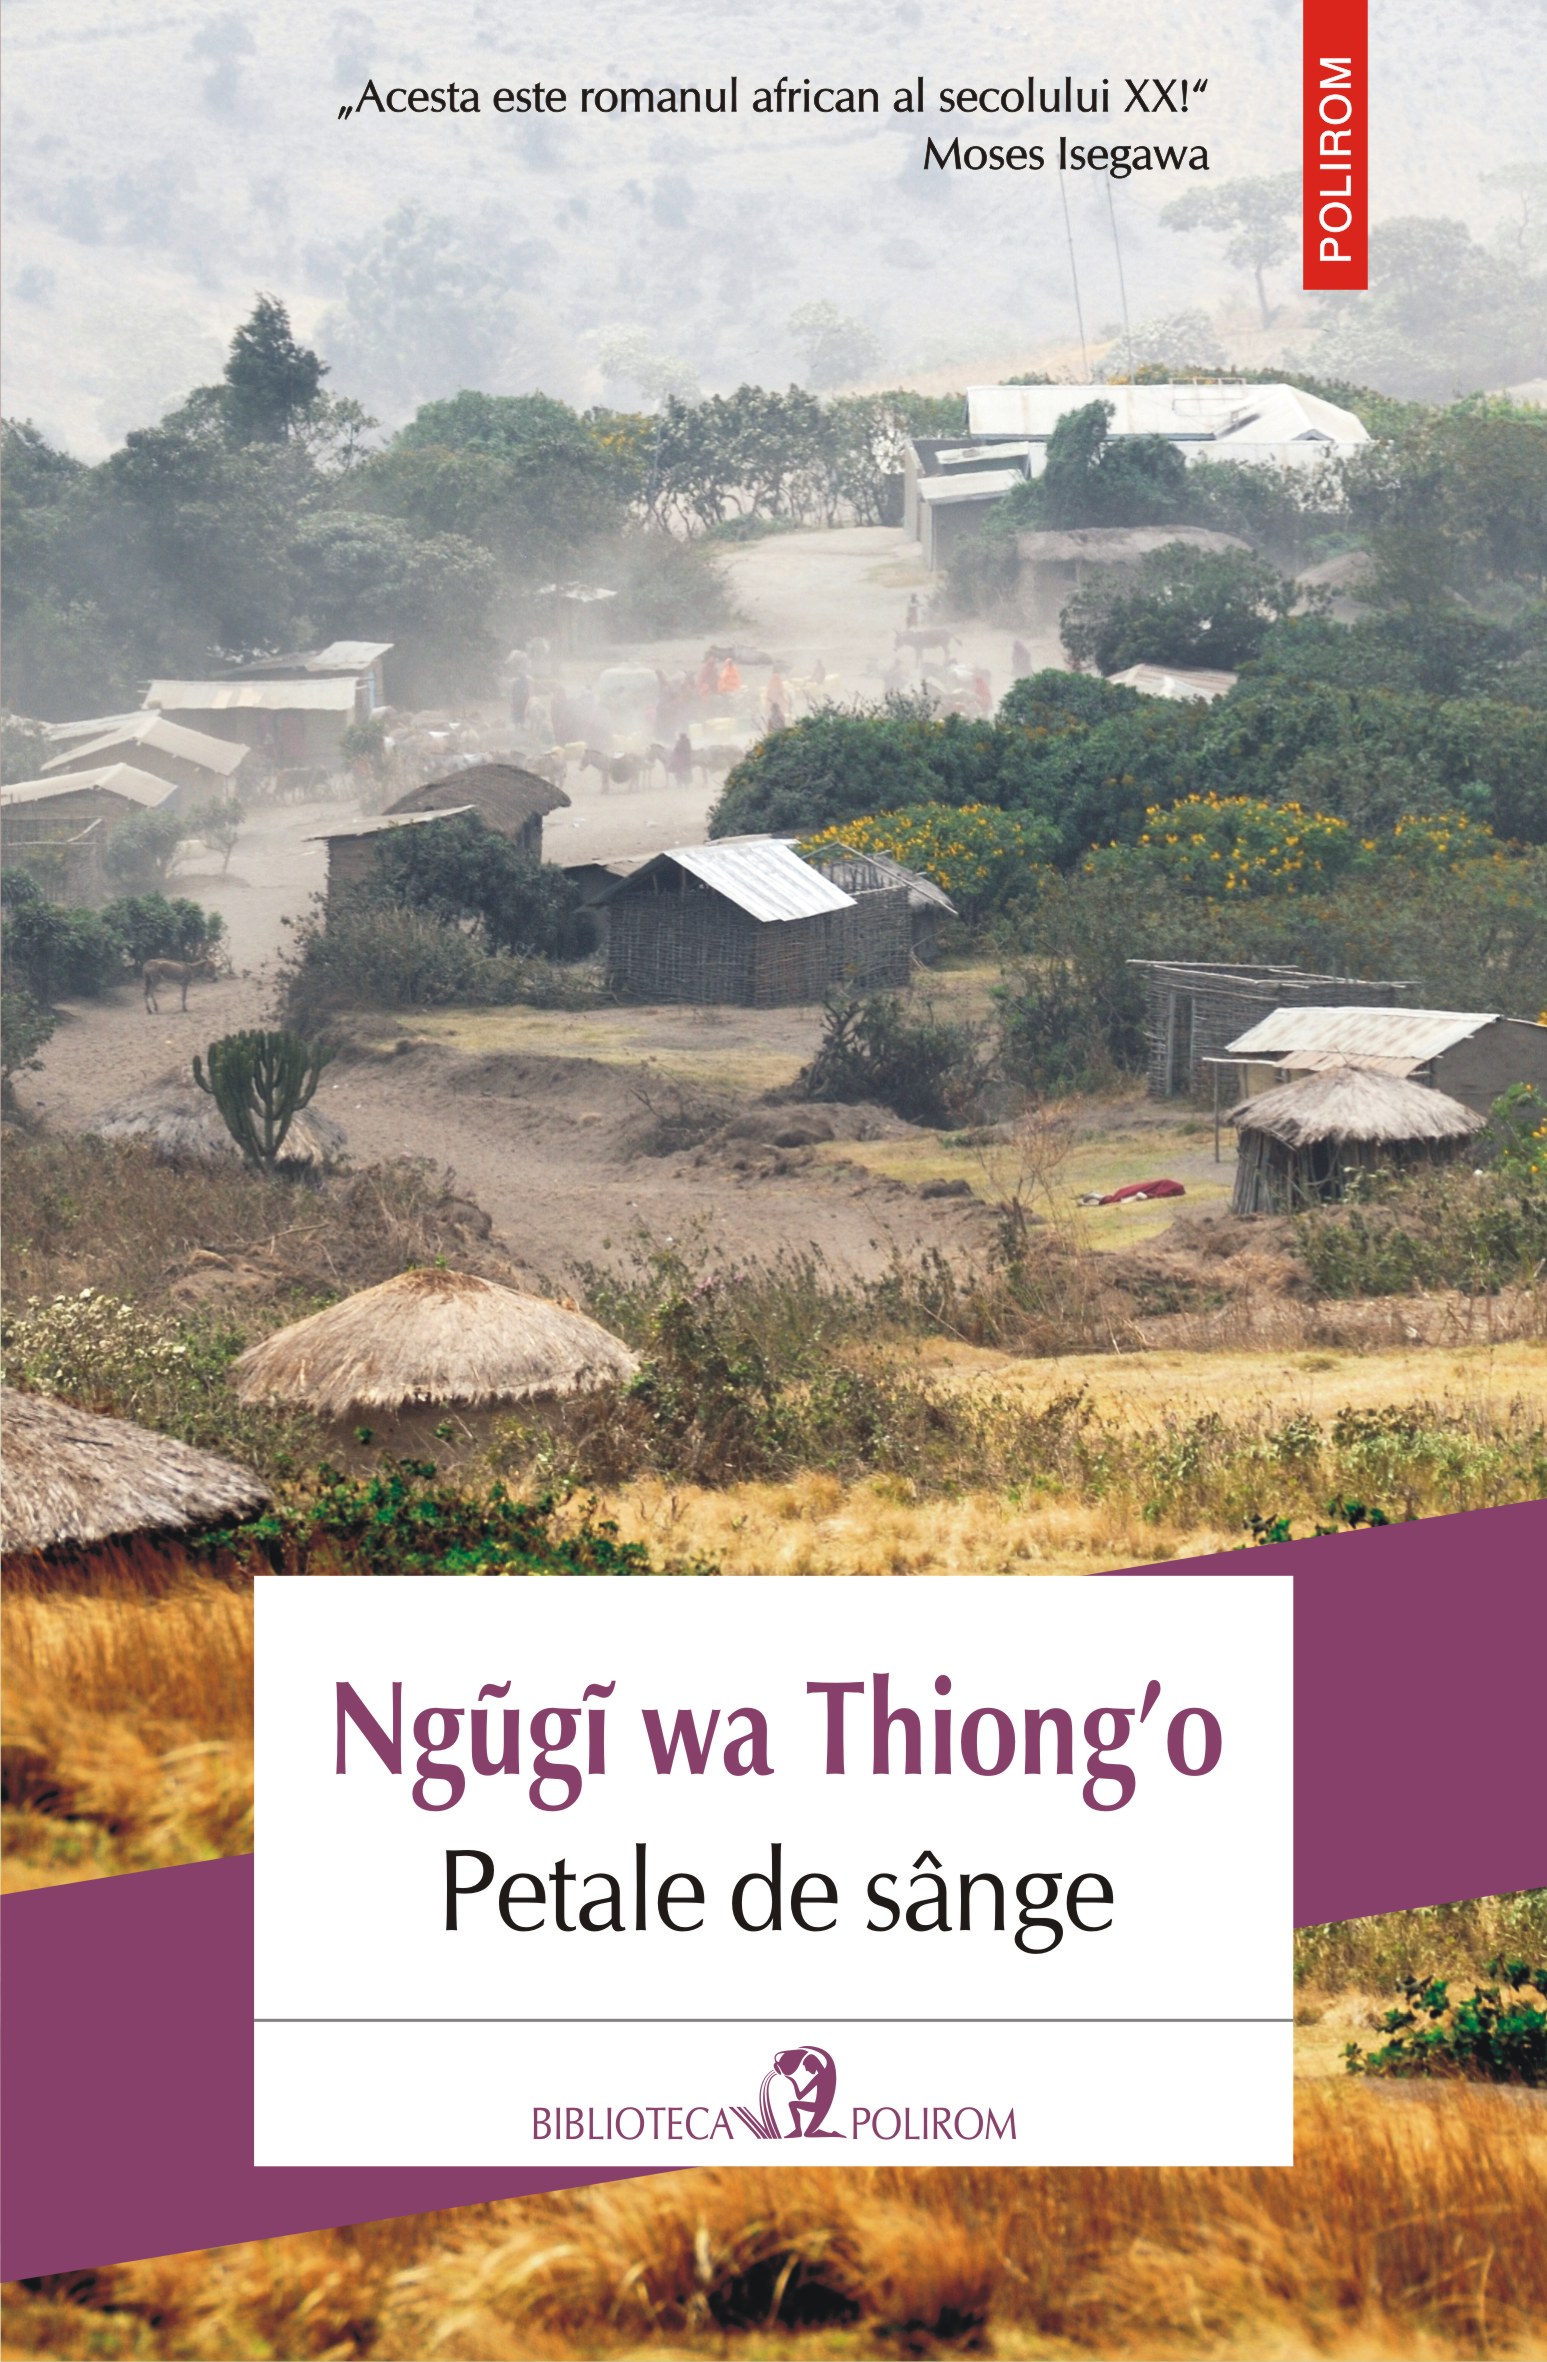 eBook Petale de sange - Ngugi wa Thiong'o